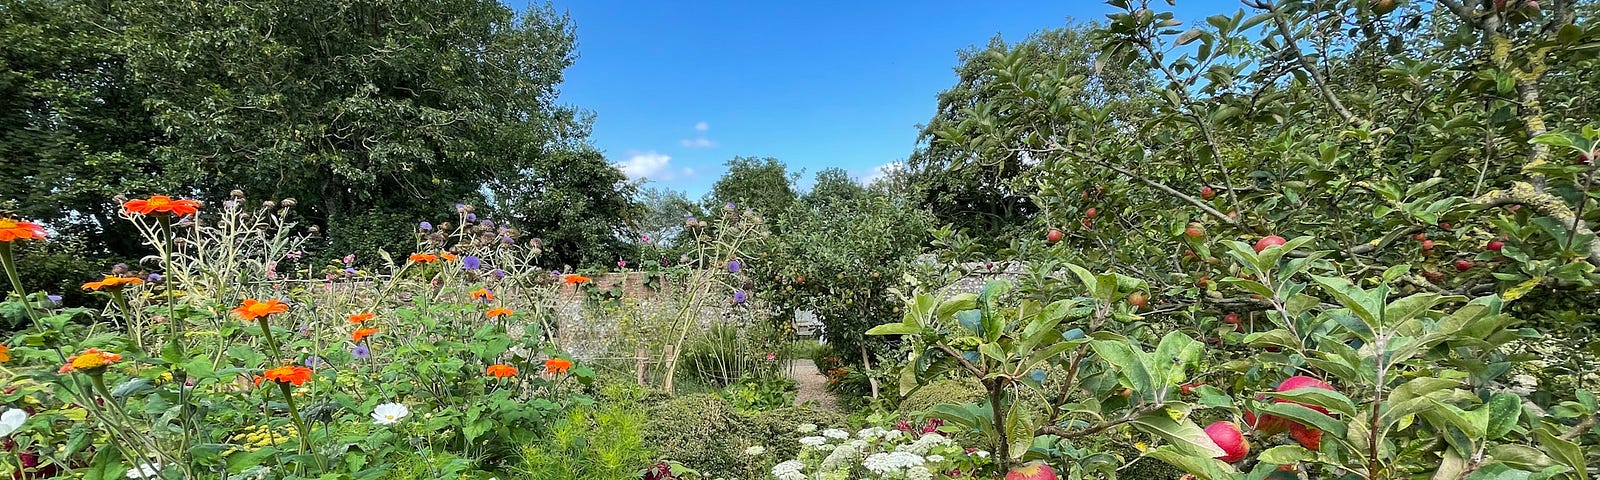 Lush Overgrown English Garden bursting colour — walled garden